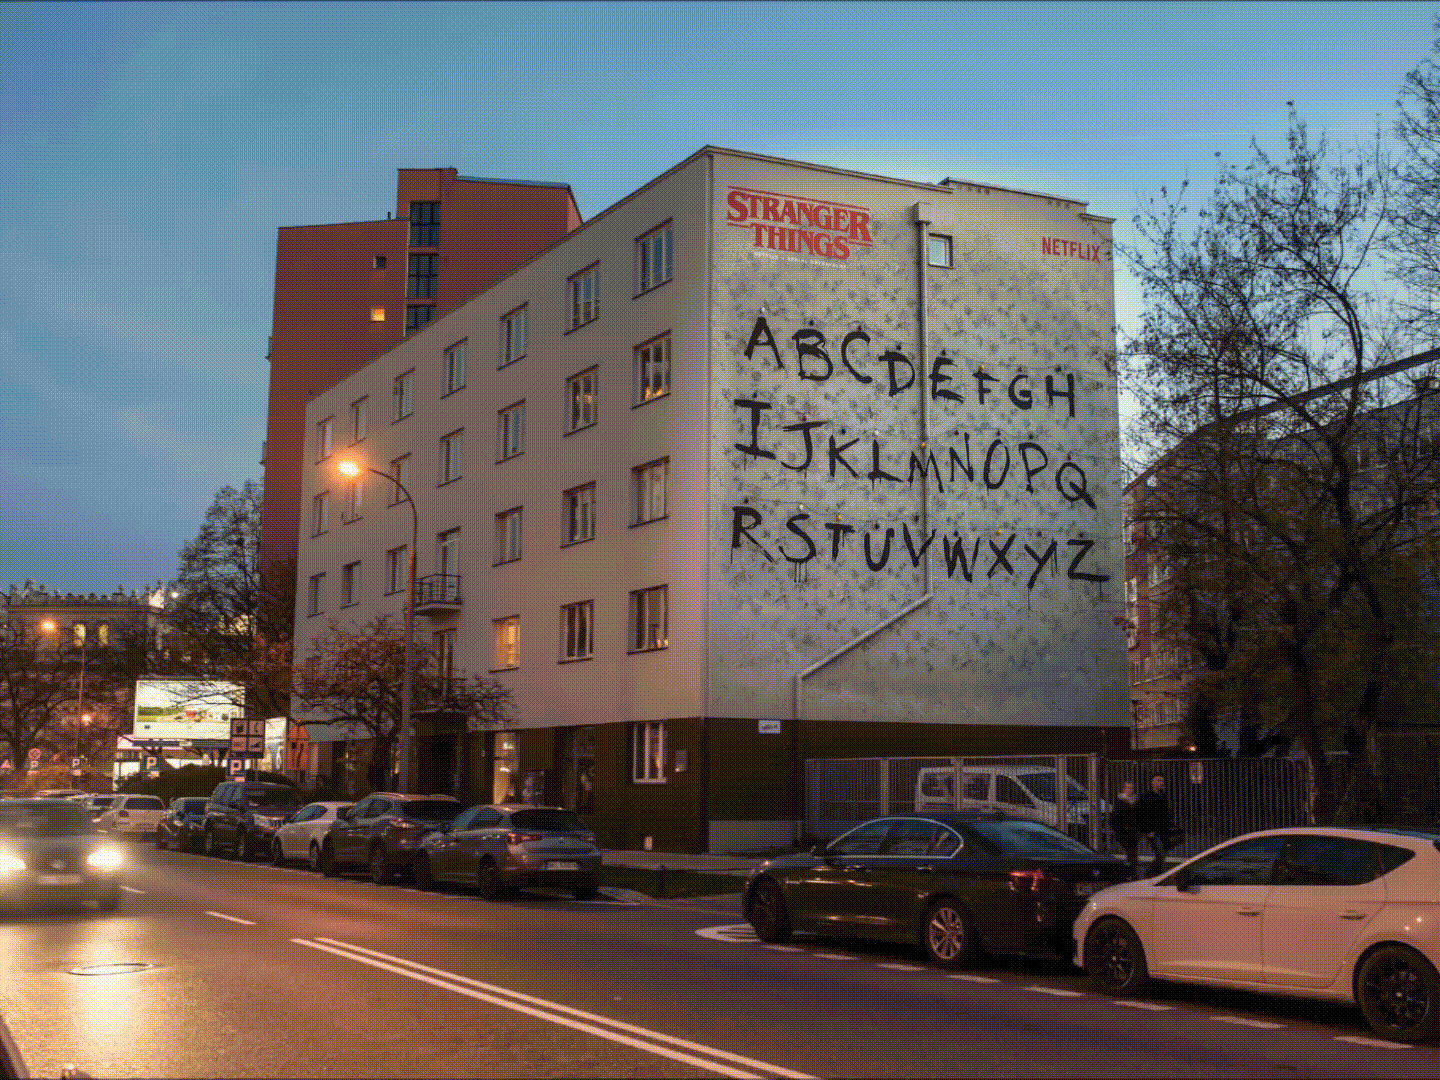 mural reklamowy na ulicy Solec na zamówienie marki Netflix Stranger Things w Warszawie | Stranger Things | Portfolio